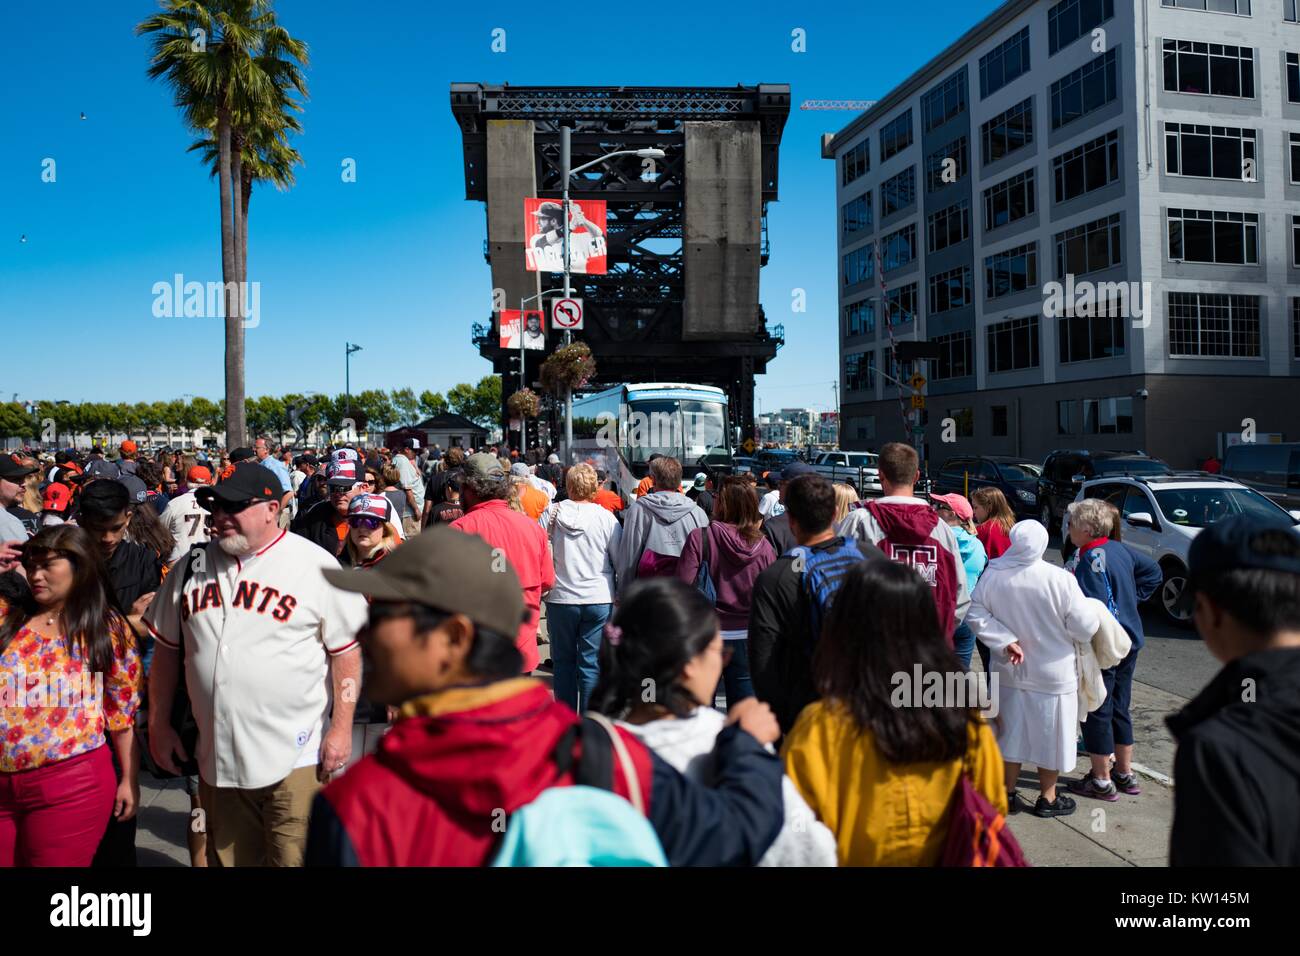 L'extérieur du stade de baseball du parc d'ATT dans le bassin de la Chine quartier de San Francisco, en Californie, les fans de l'équipe de baseball des Giants de San Francisco se réunir après un match, San Francisco, Californie, 2016. Banque D'Images